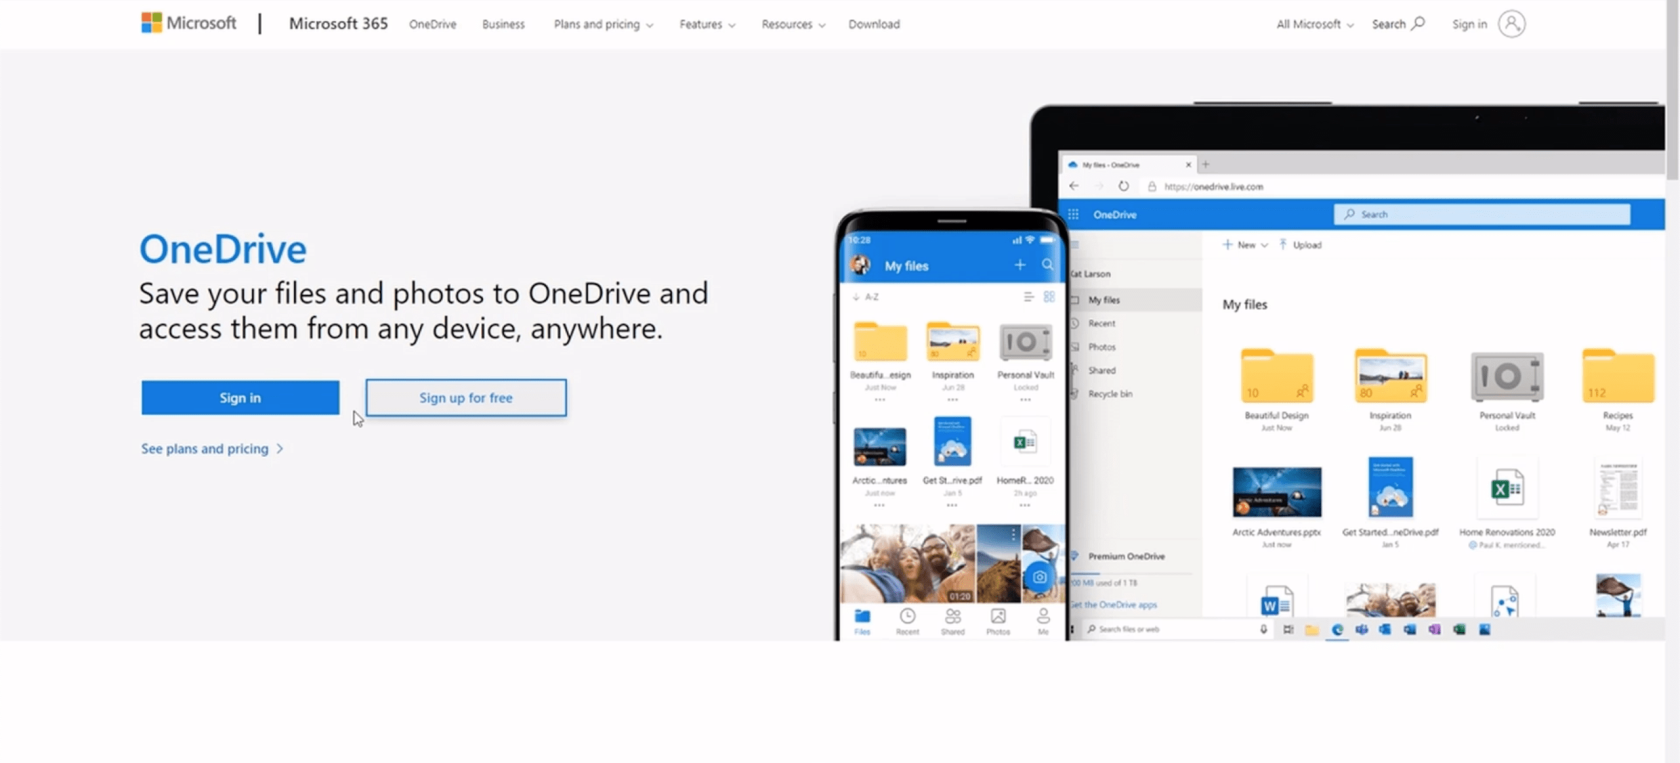 Einrichtung der Power Apps-Umgebung: Verbindung zu OneDrive und Google Drive herstellen